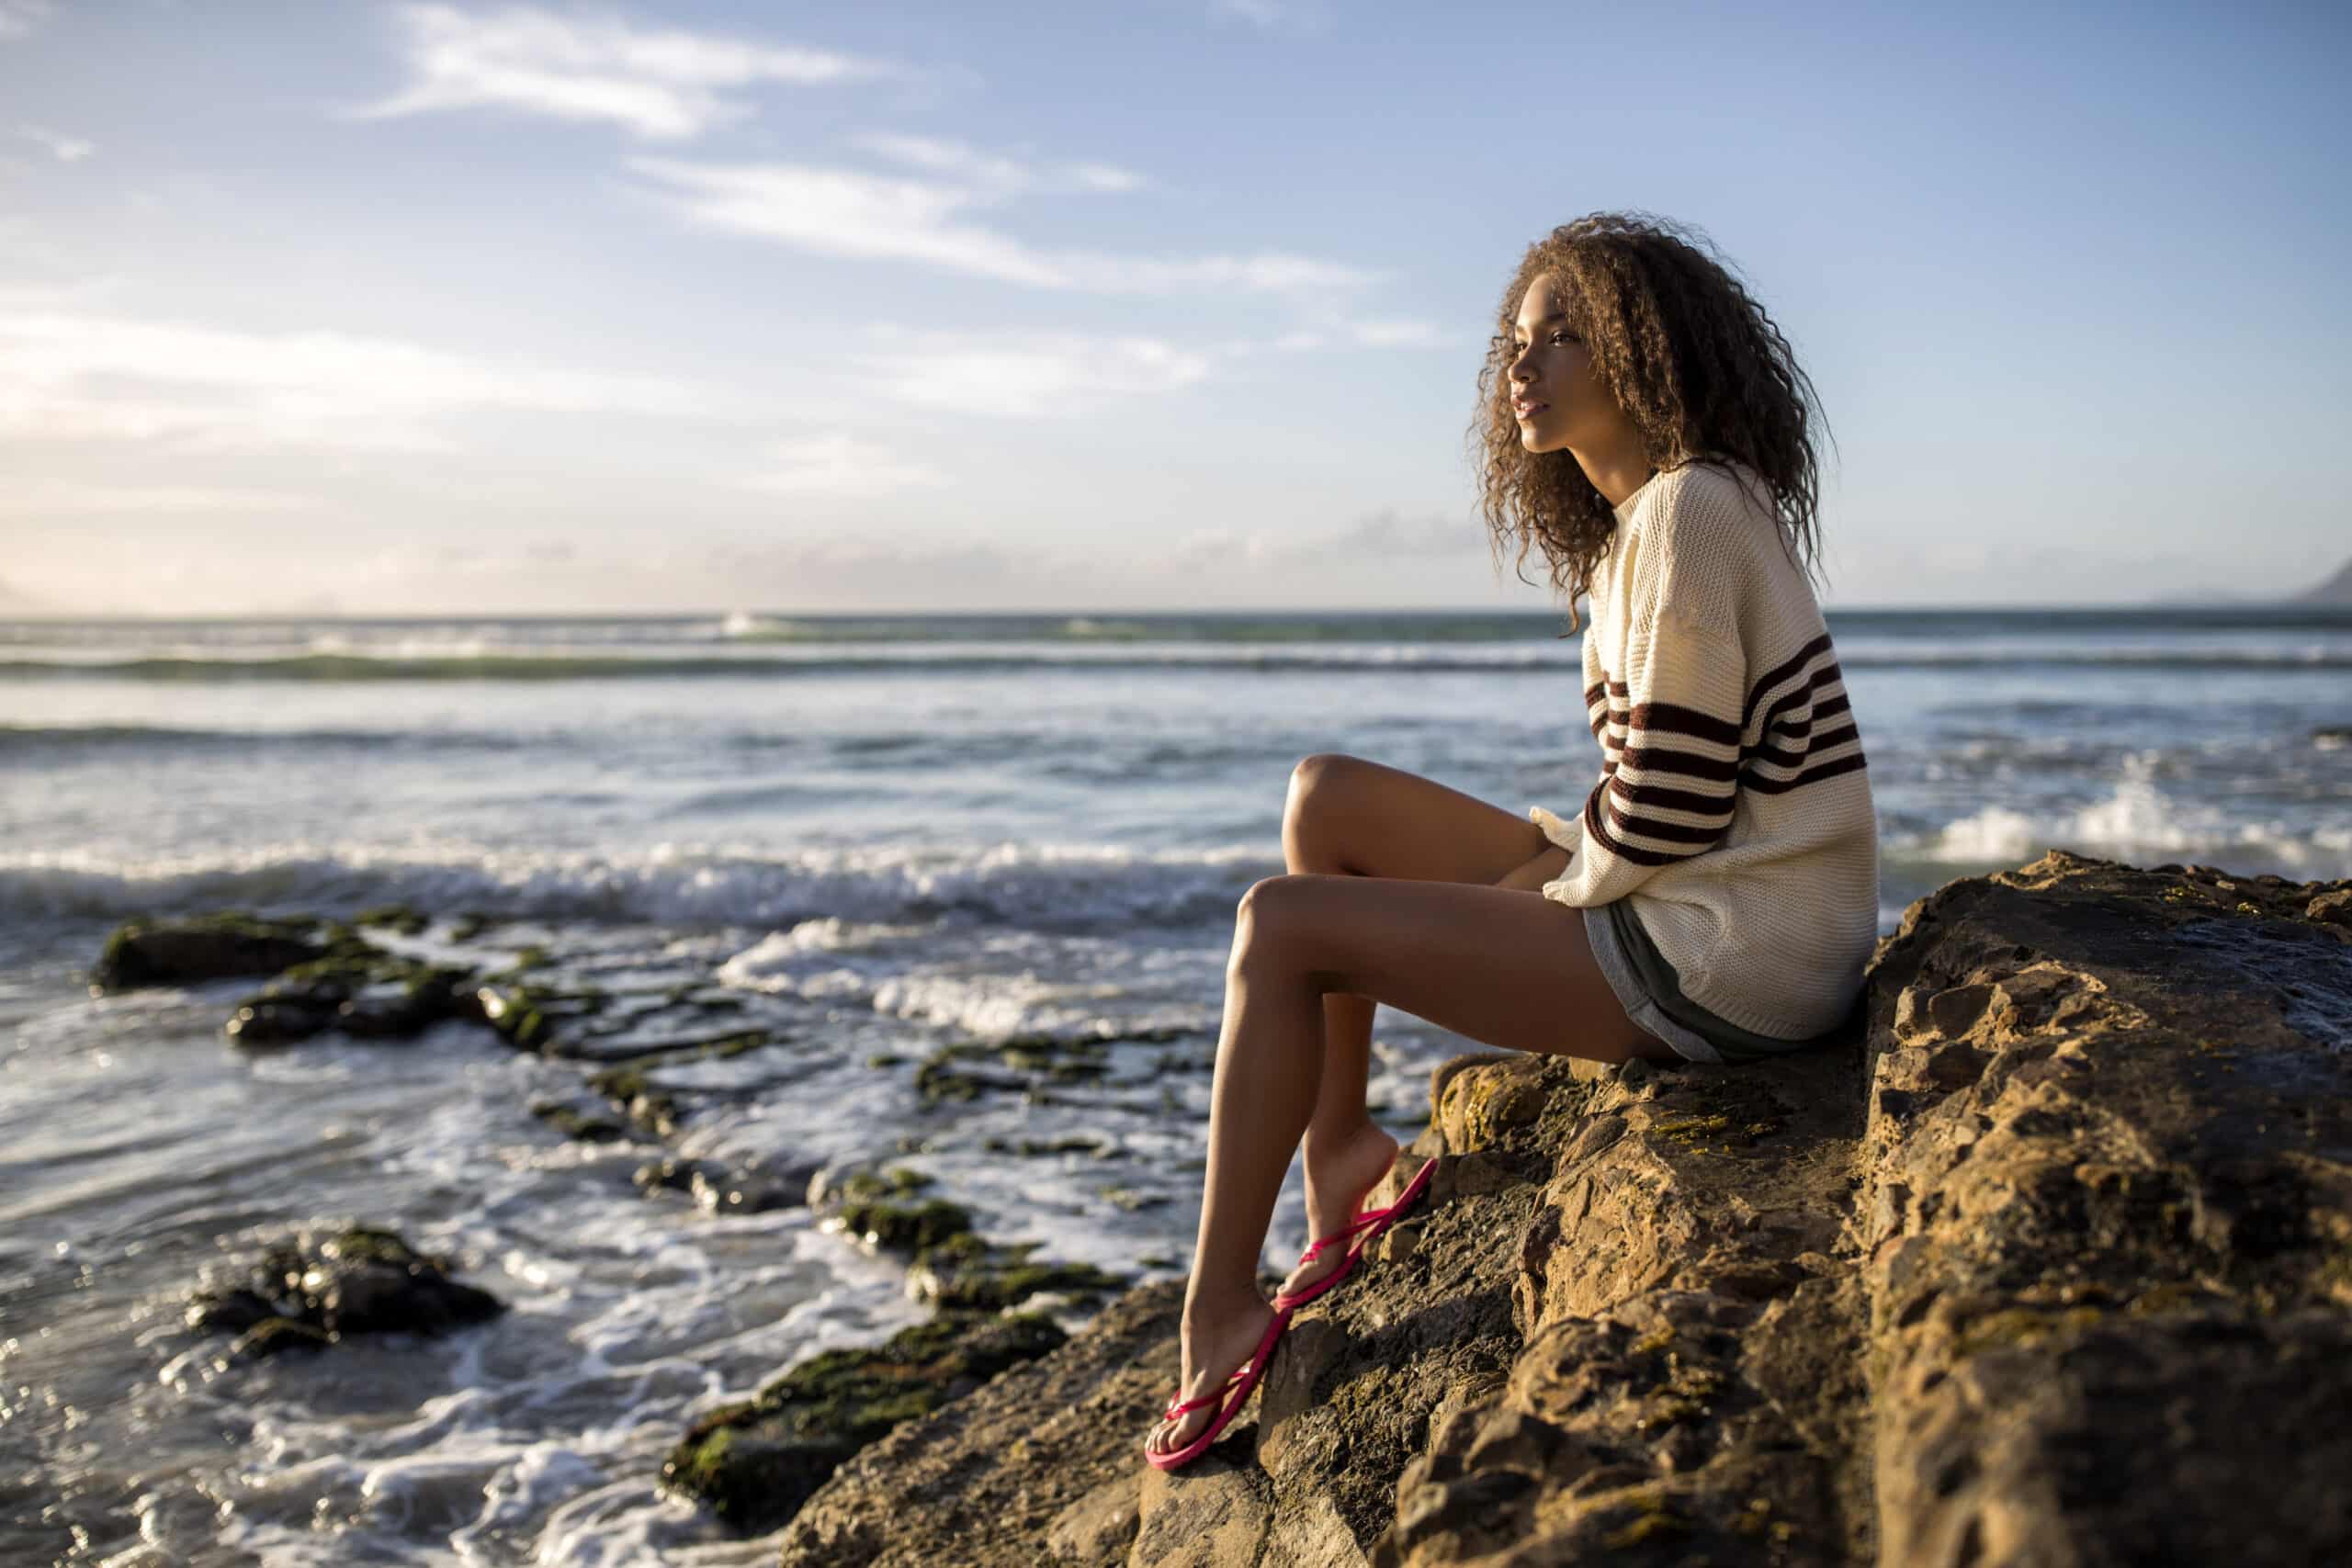 Eine Frau sitzt auf einem Felsvorsprung am Meer und blickt auf den Horizont. Sie trägt einen weiß-braun gestreiften Pullover und Shorts sowie rote Sandalen. Im Hintergrund geht die Sonne unter. © Fotografie Tomas Rodriguez